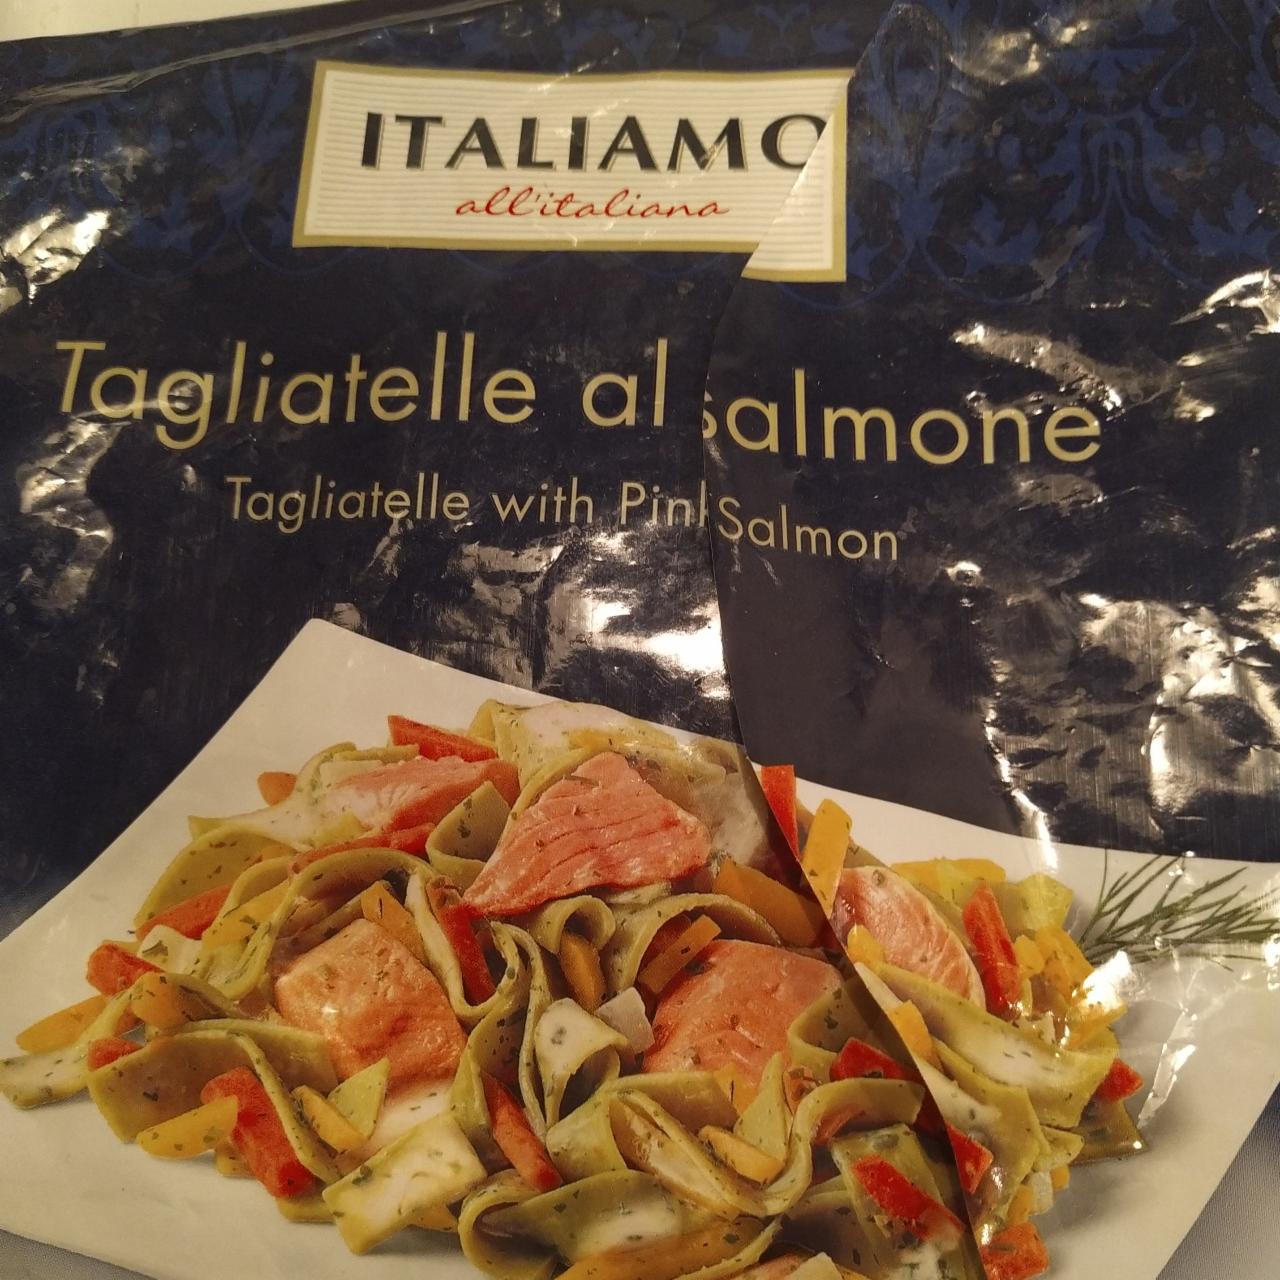 Fotografie - Tagliatelle al salmone Italiamo